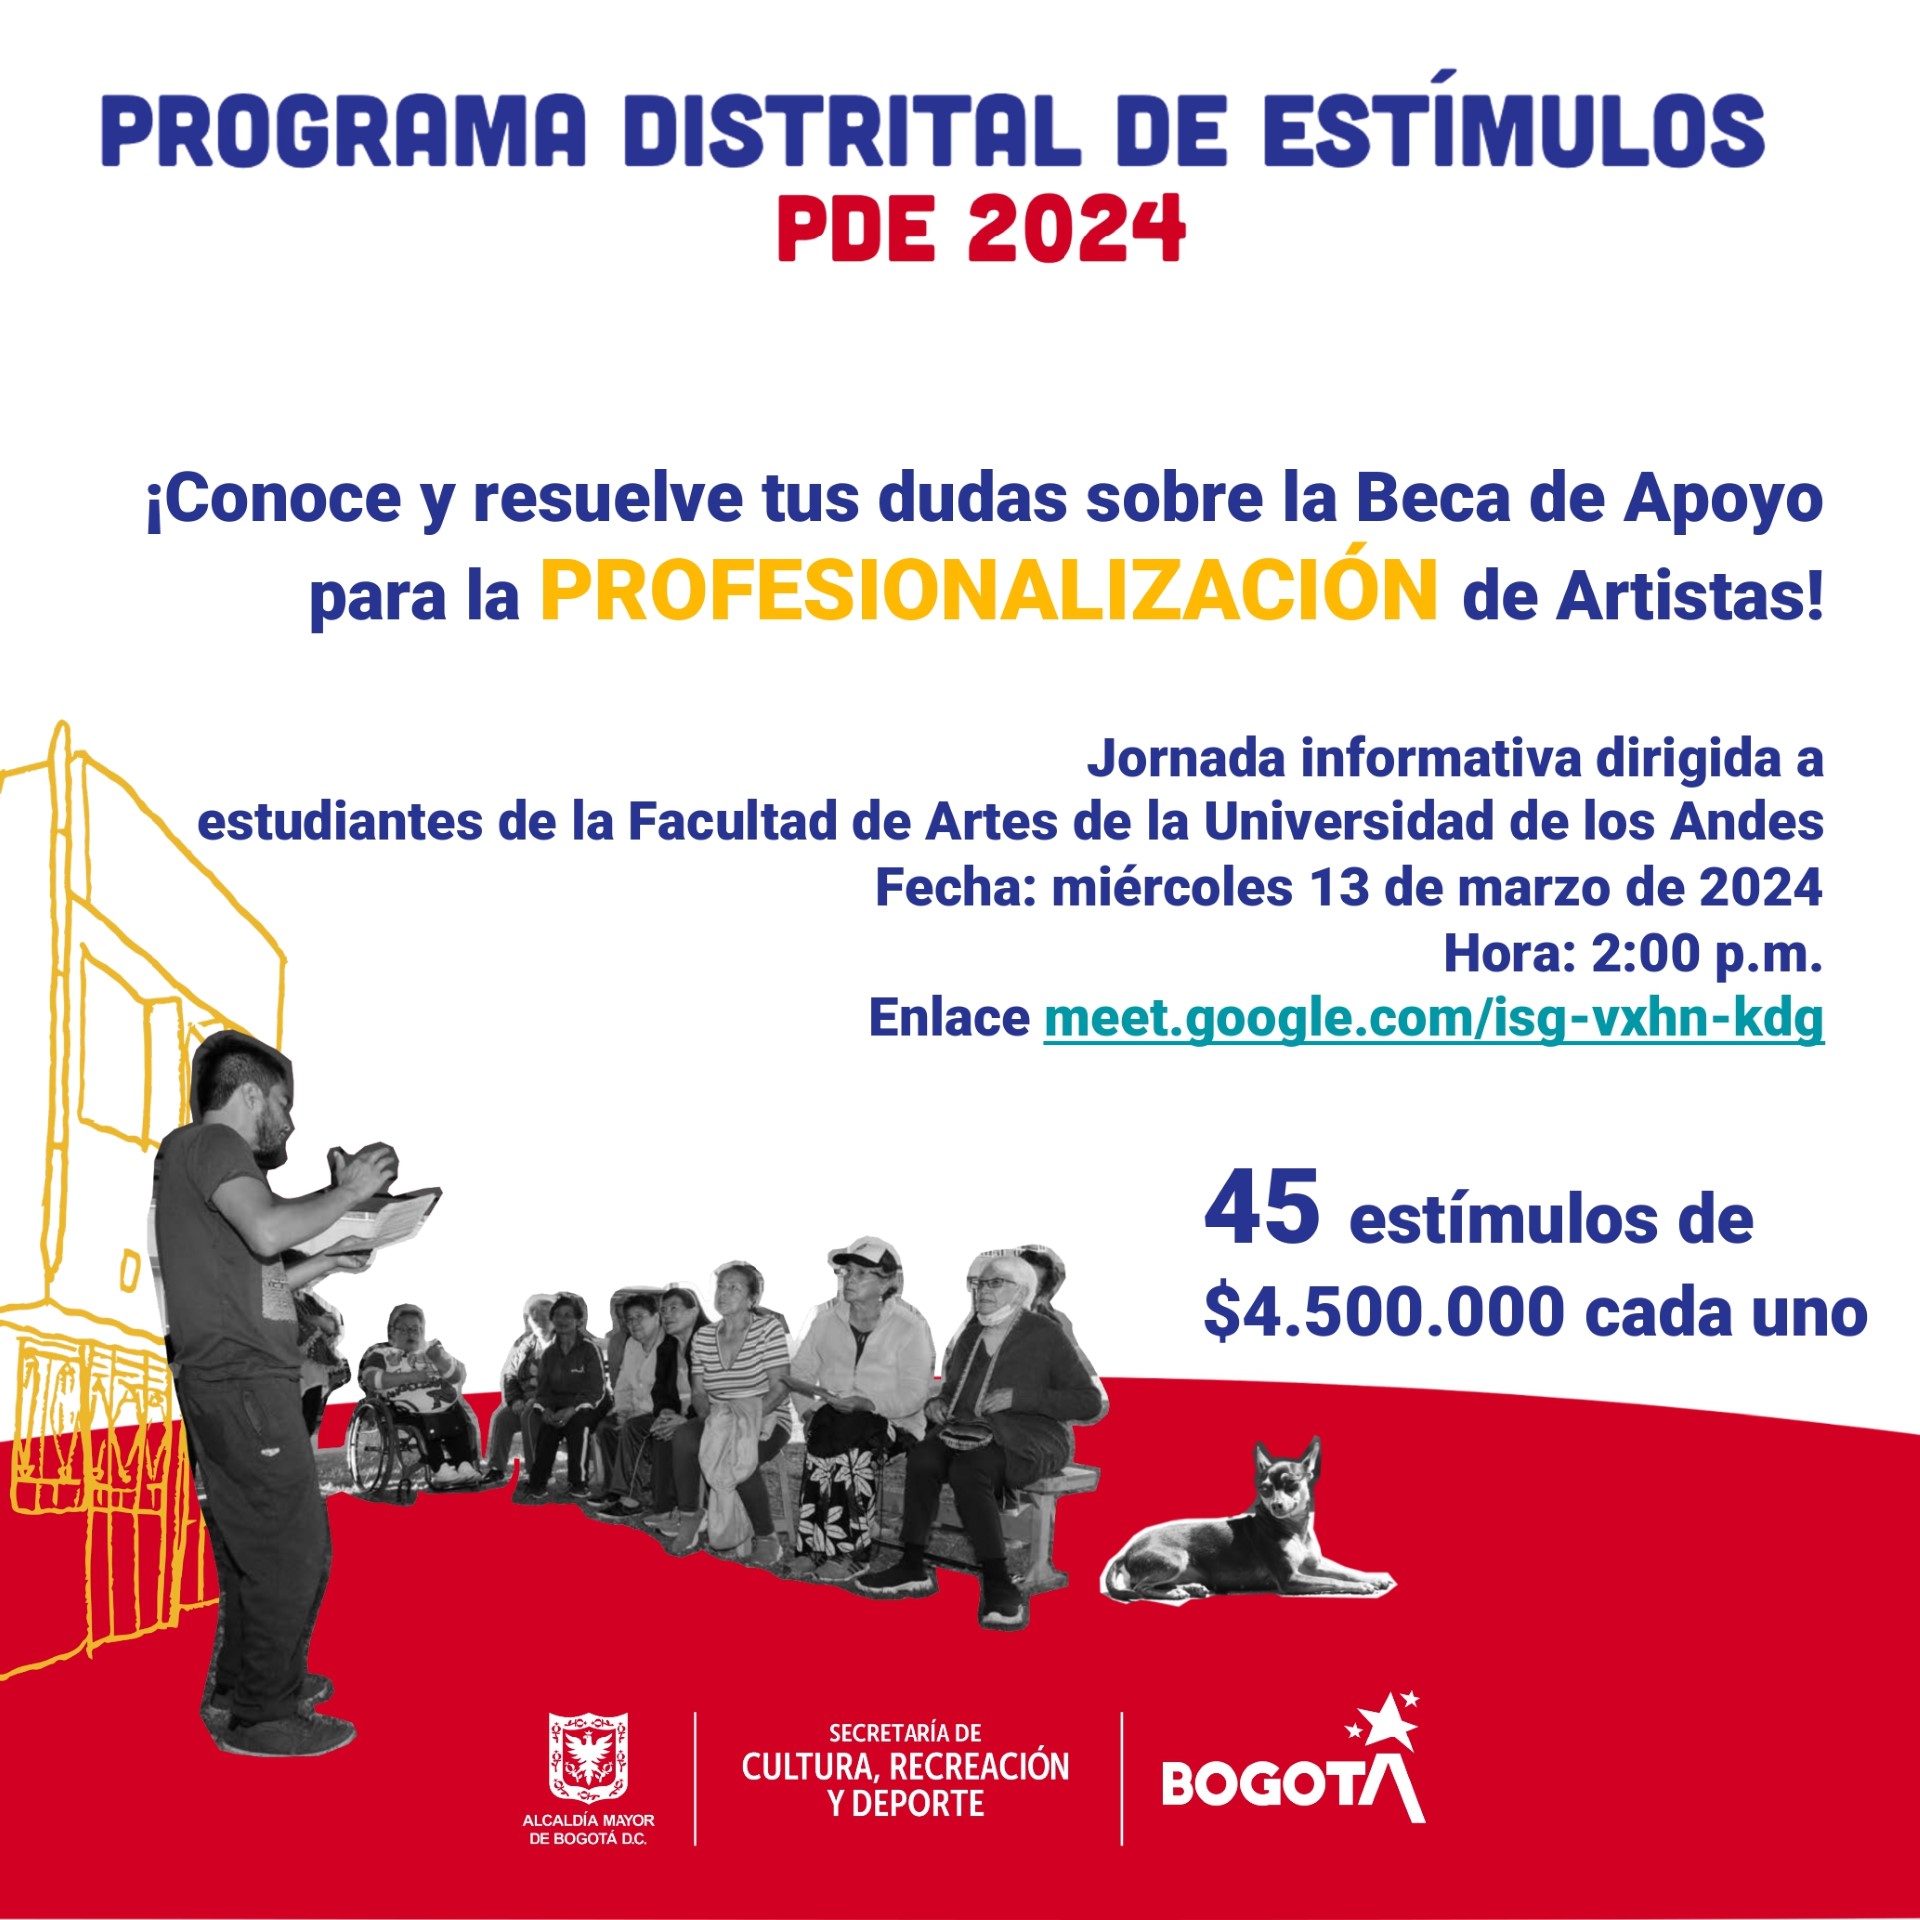 Dirigida a estudiantes de la Facultad de Artes y Humanidades de la Universidad de los Andes